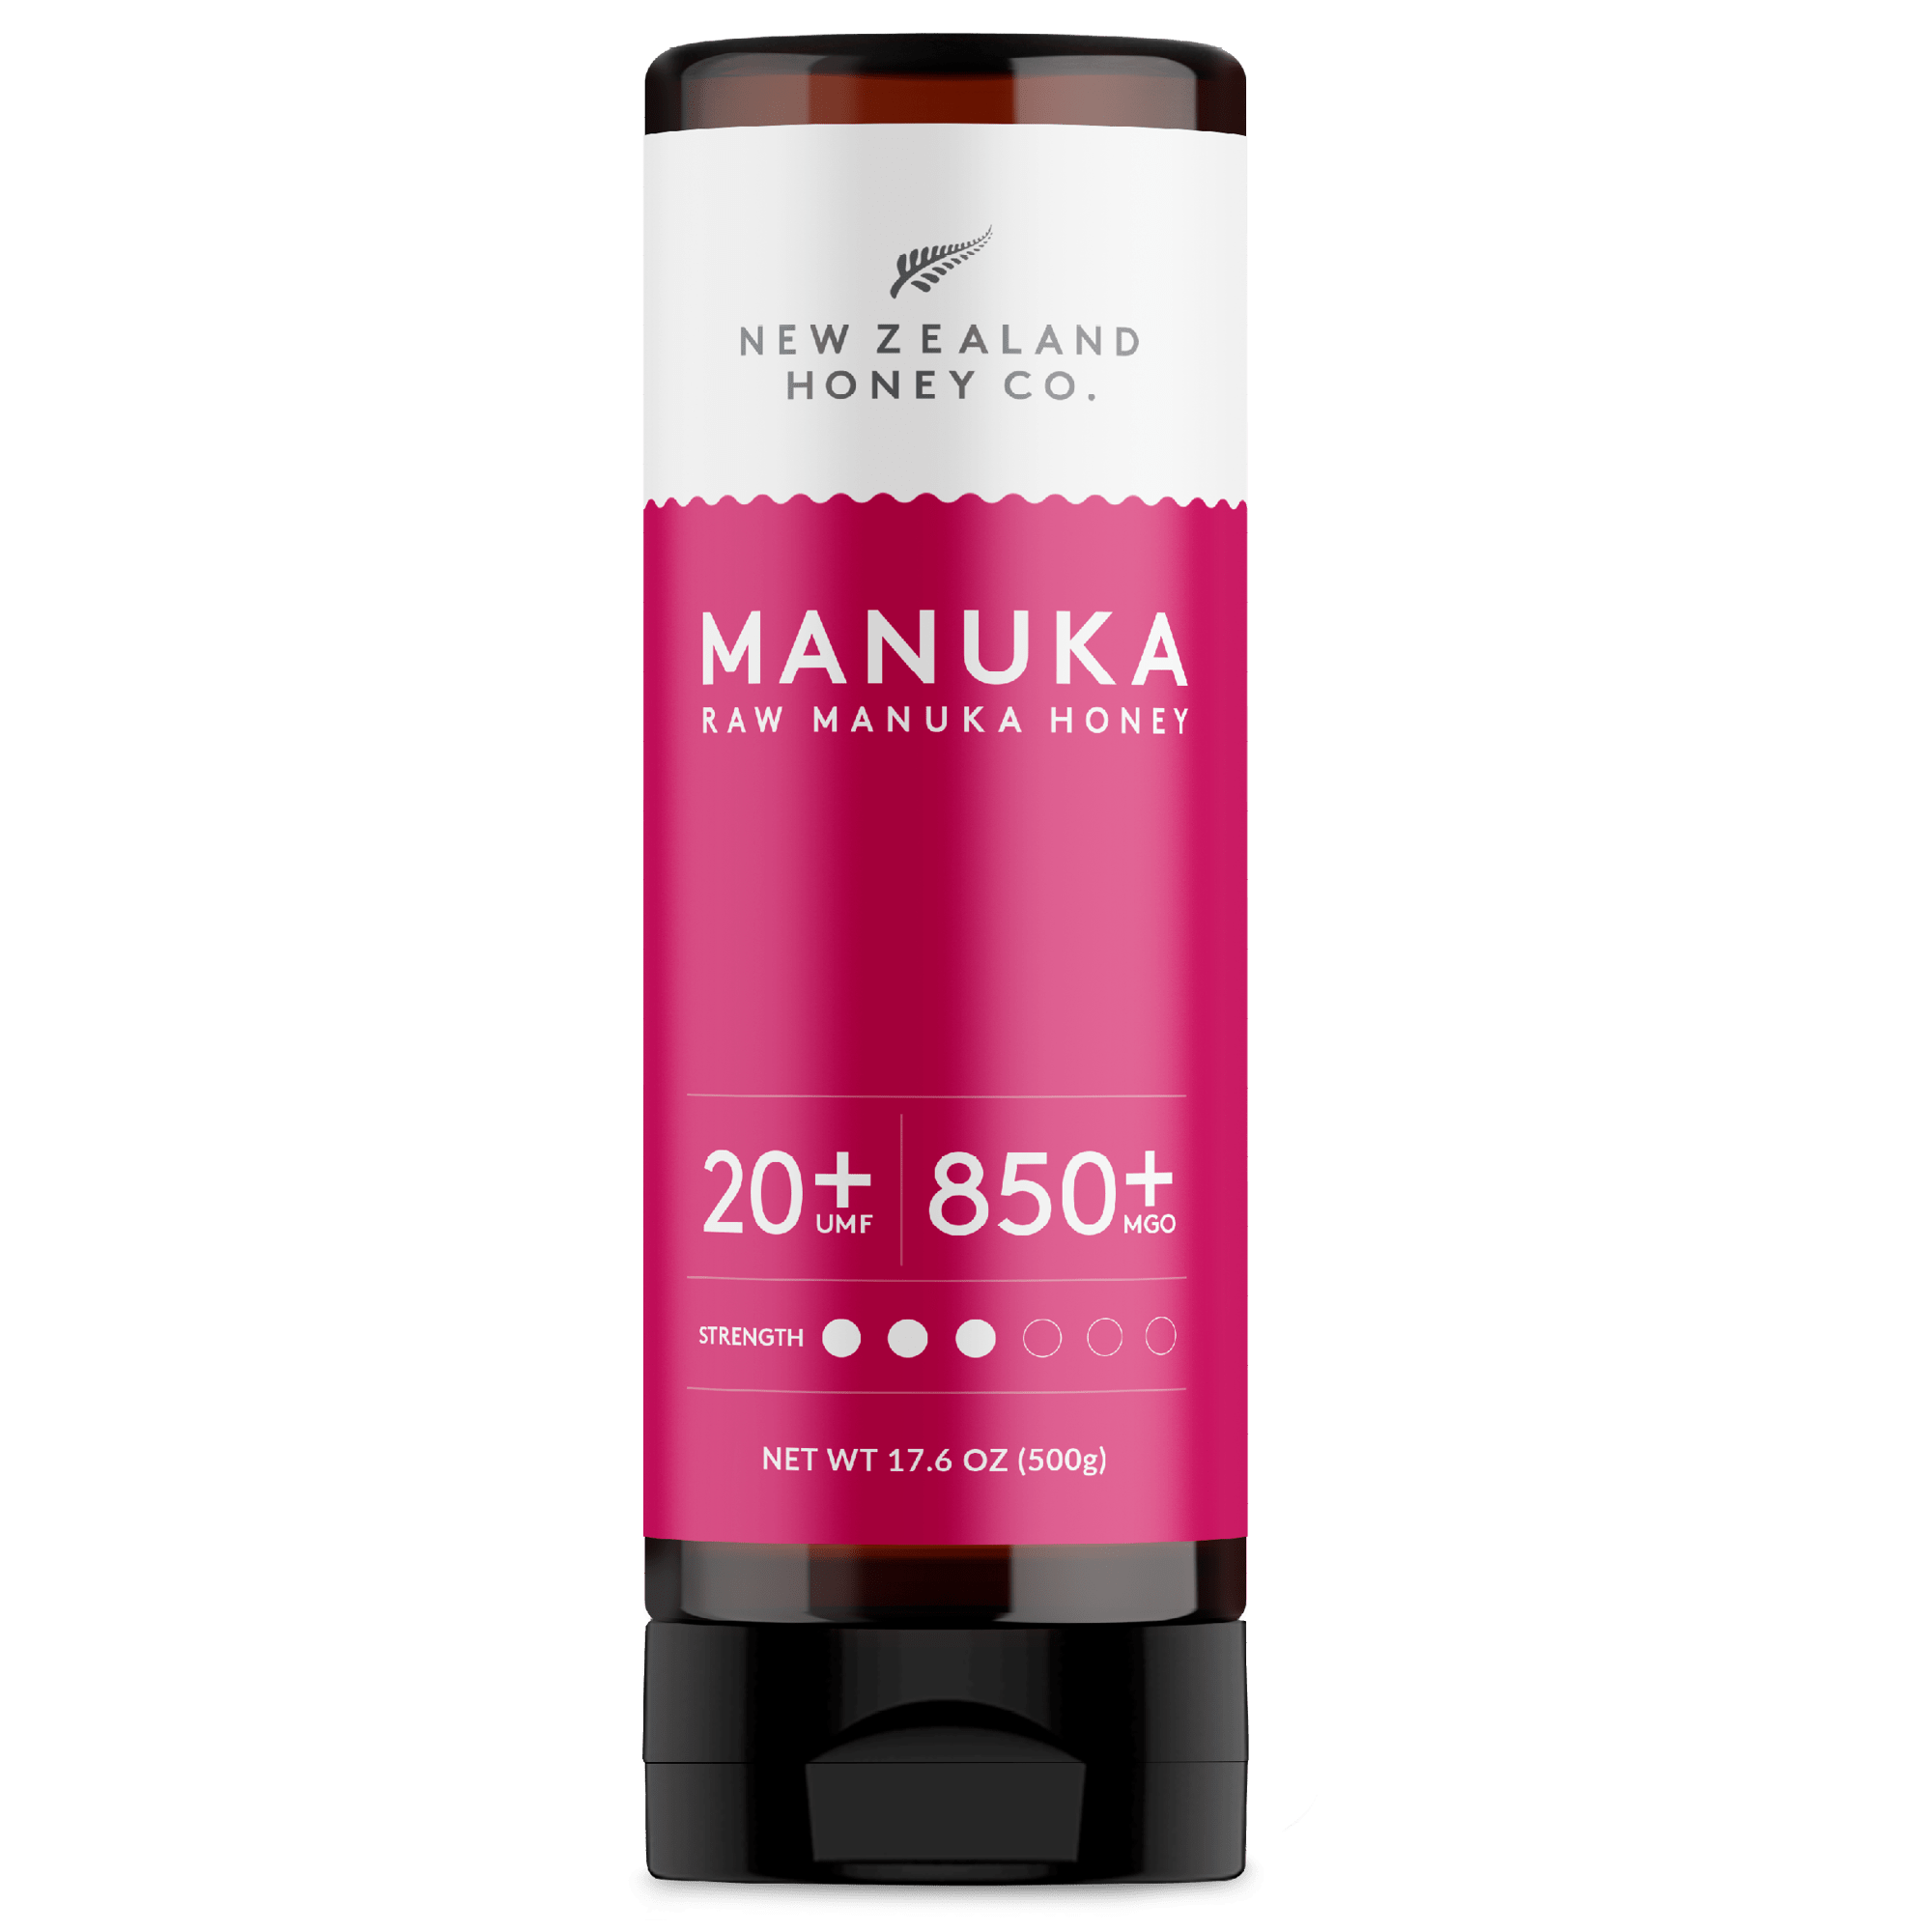 Manuka Honey UMF™ 20+ | MGO 829+